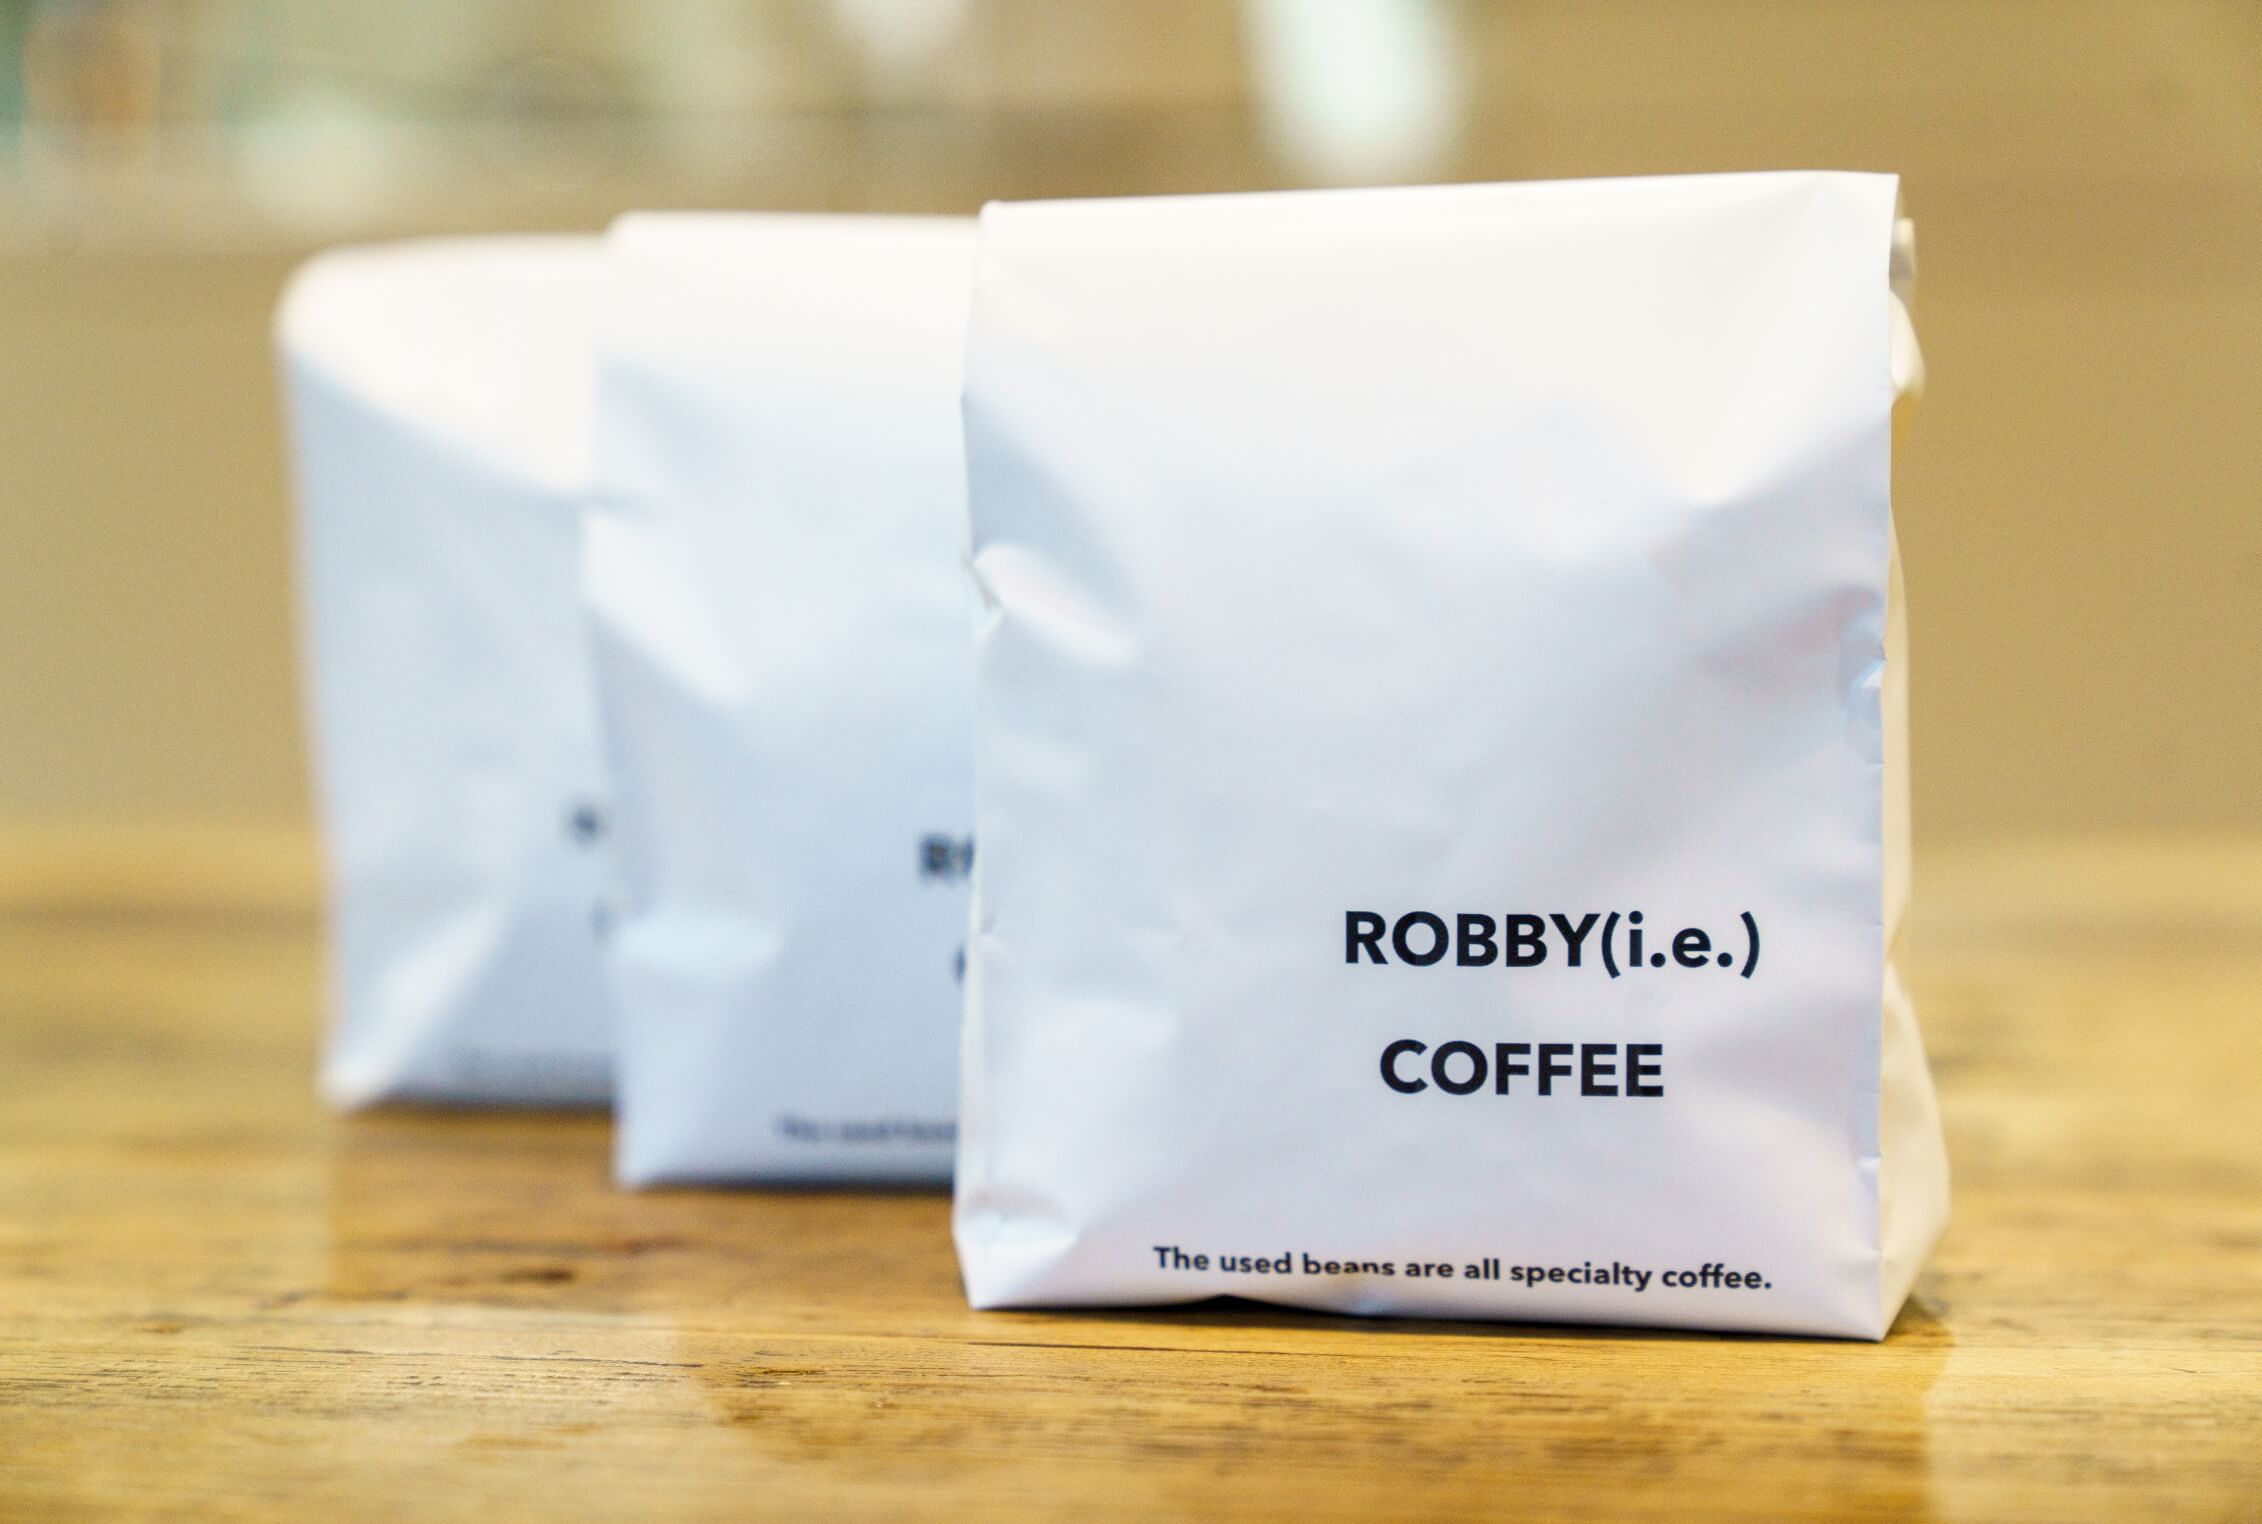 ROBBY(i.e.)COFFEE